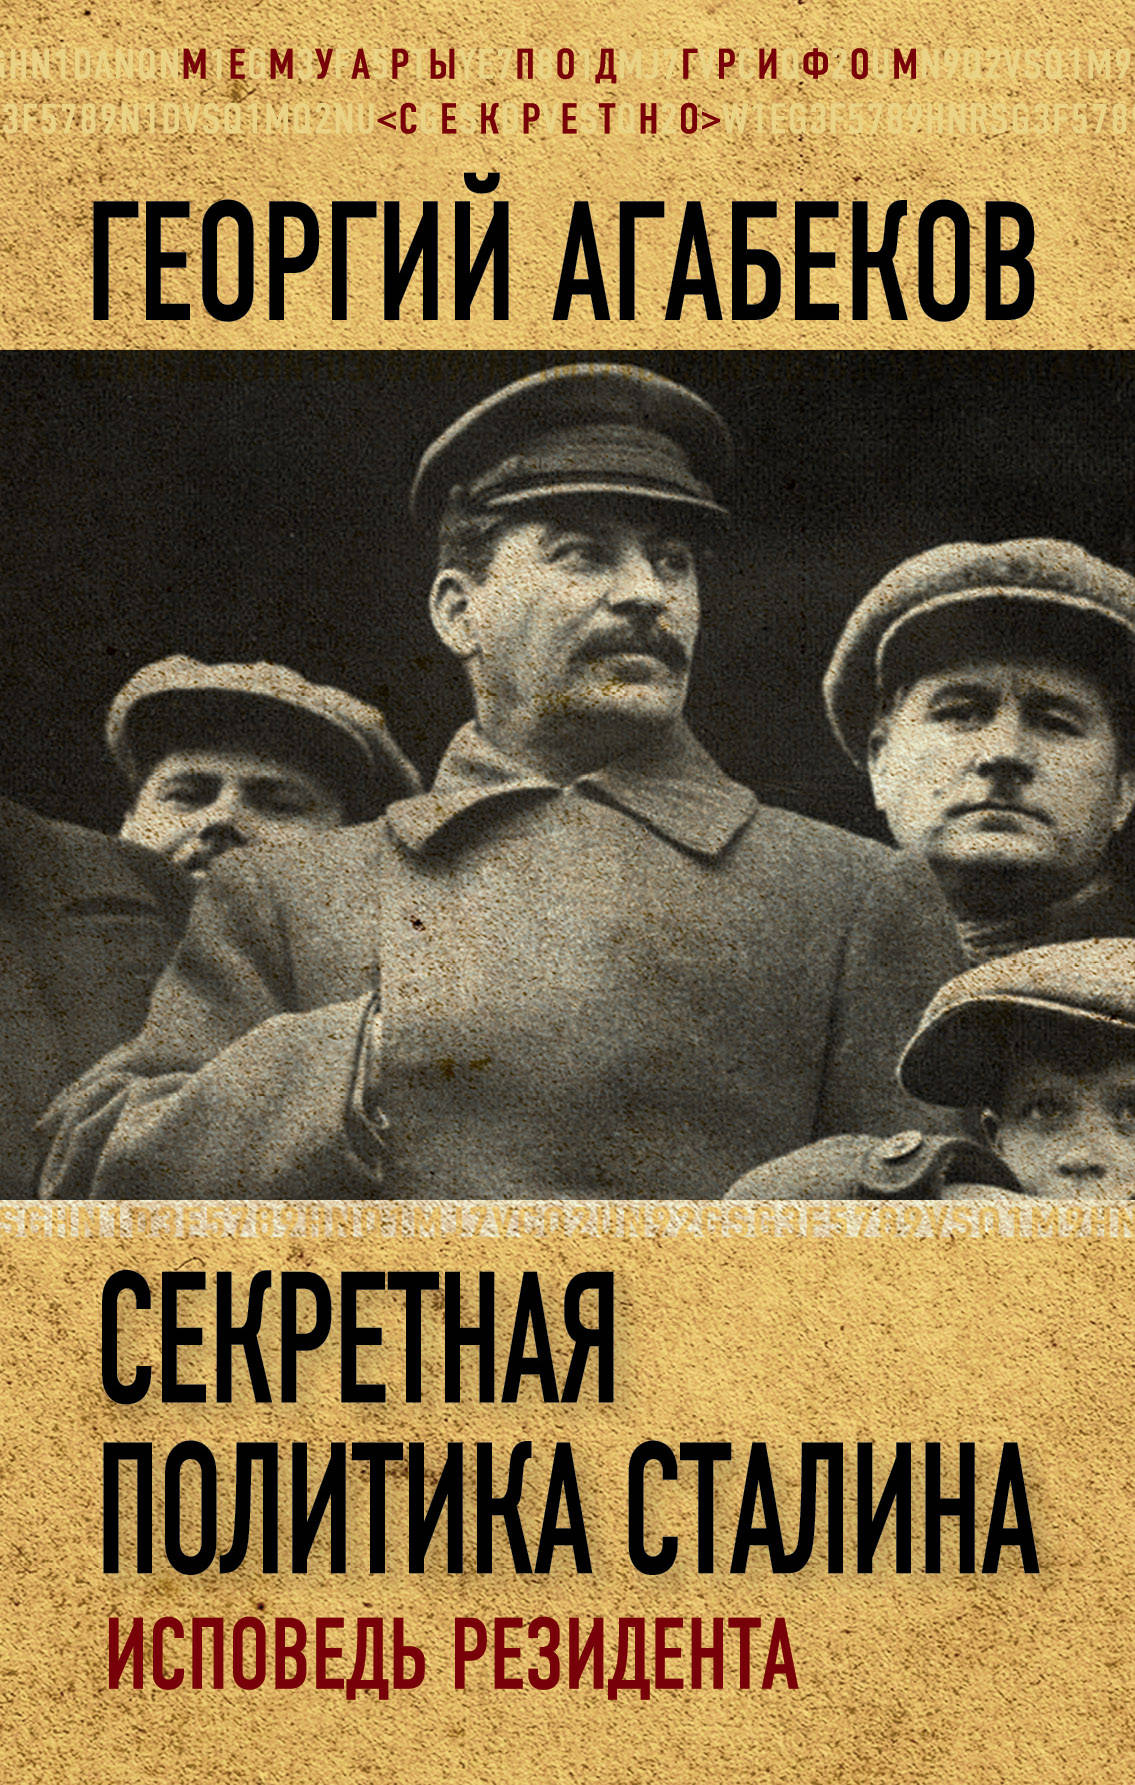 Секретная политика Сталина. Исповедь резидента. Агабеков Георгий